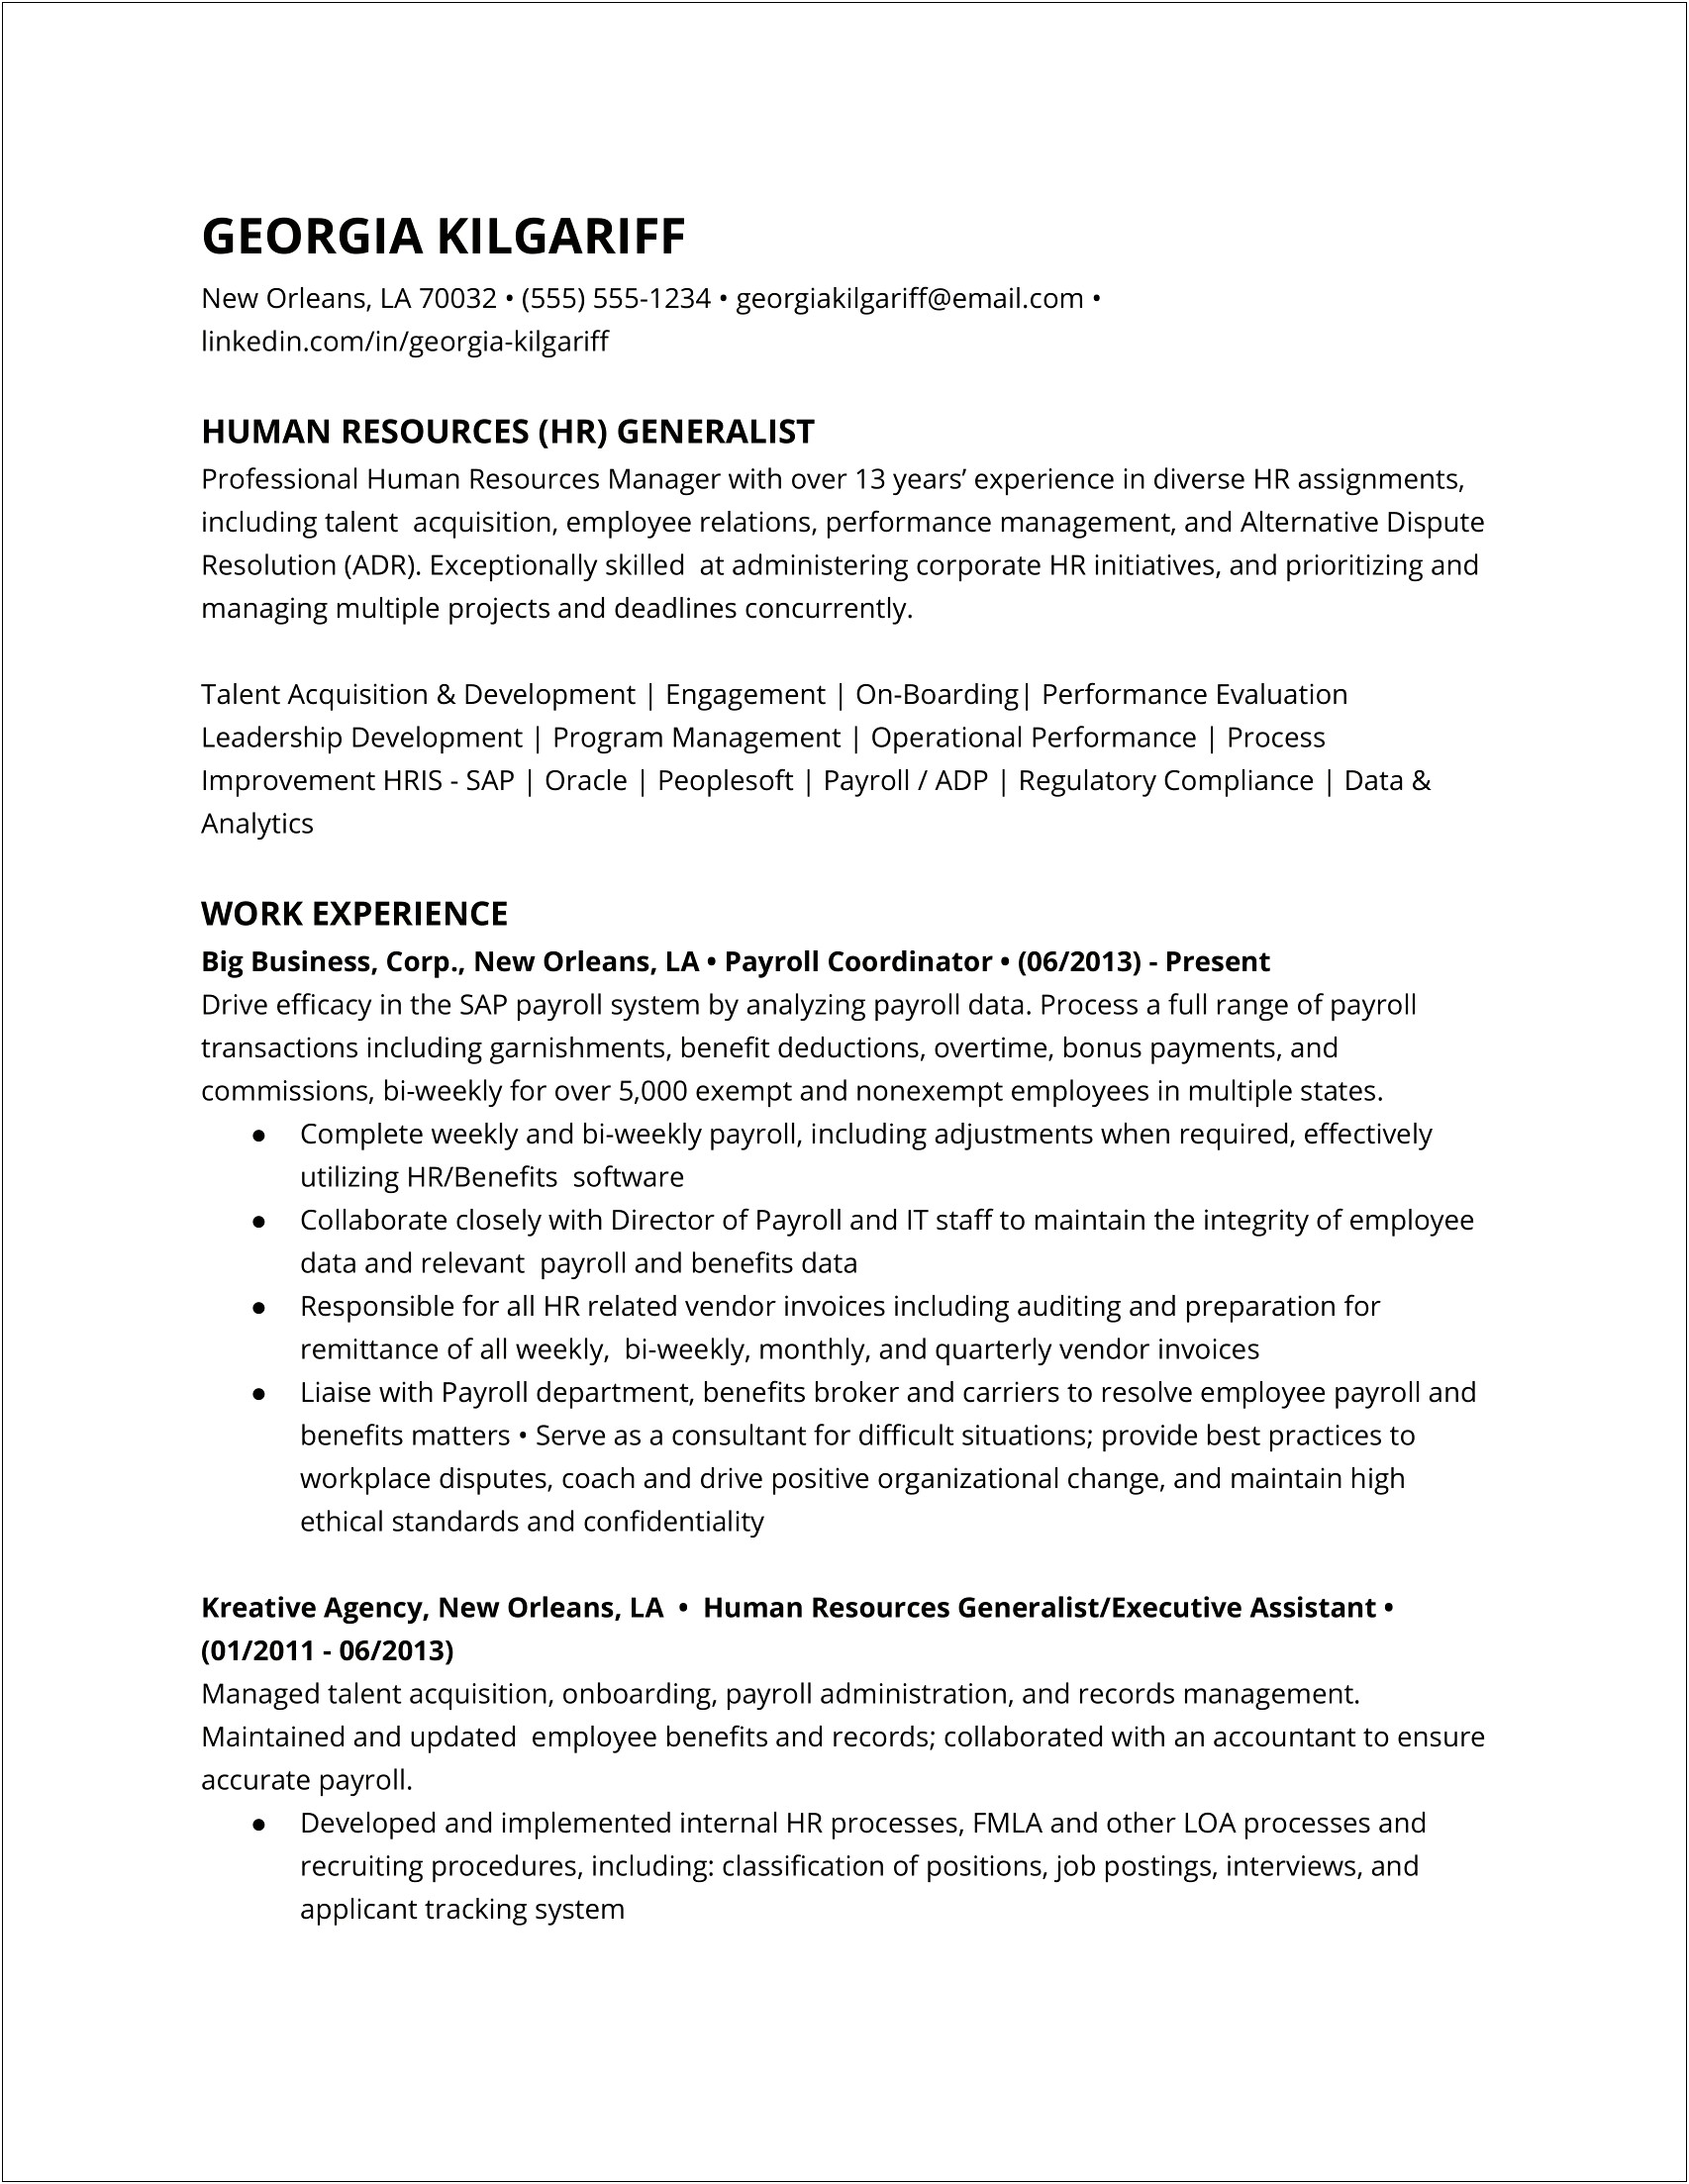 Resume Description For Talent Acquisition Specialist